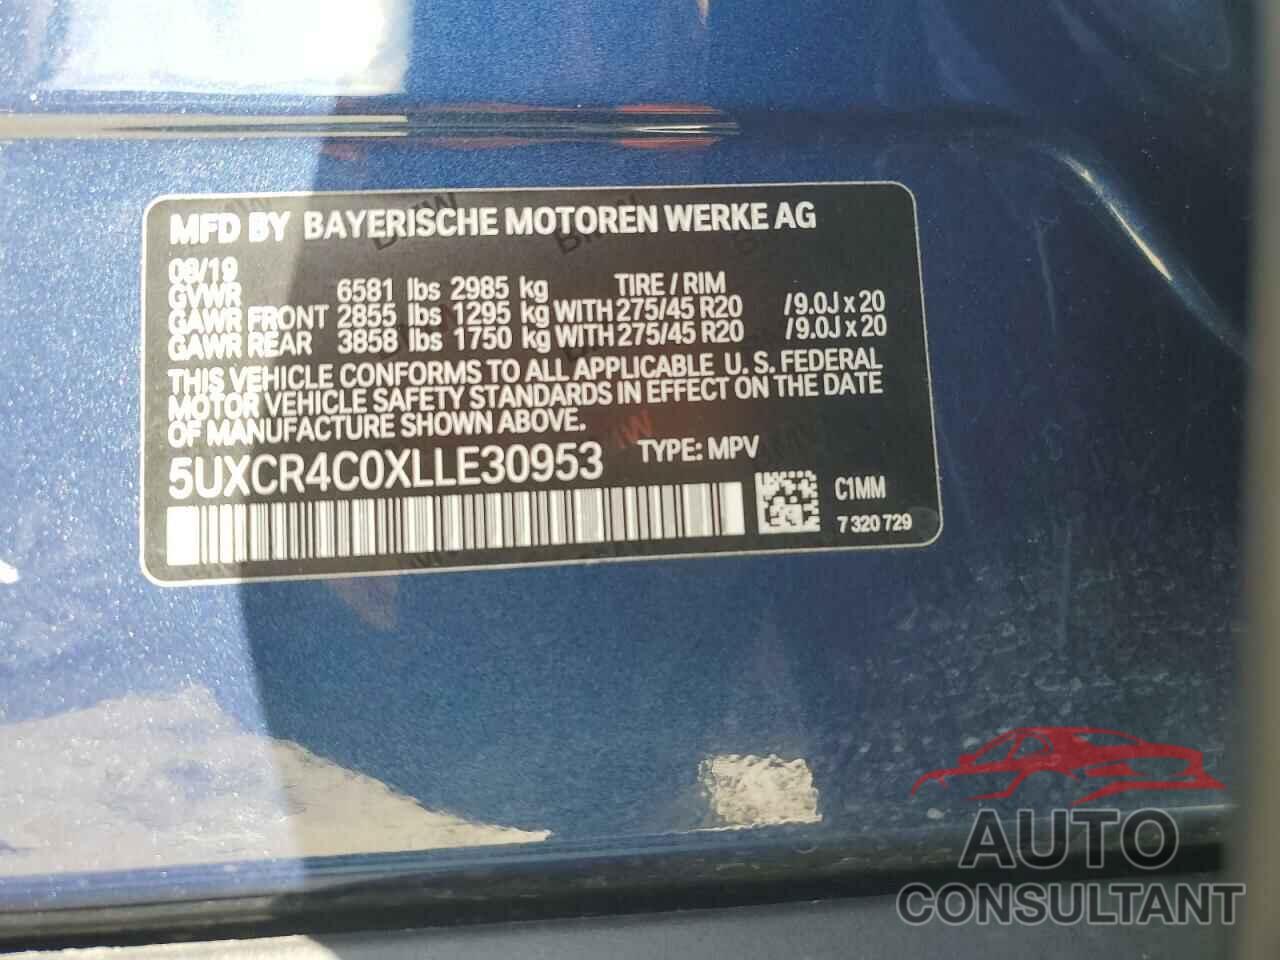 BMW X5 2020 - 5UXCR4C0XLLE30953